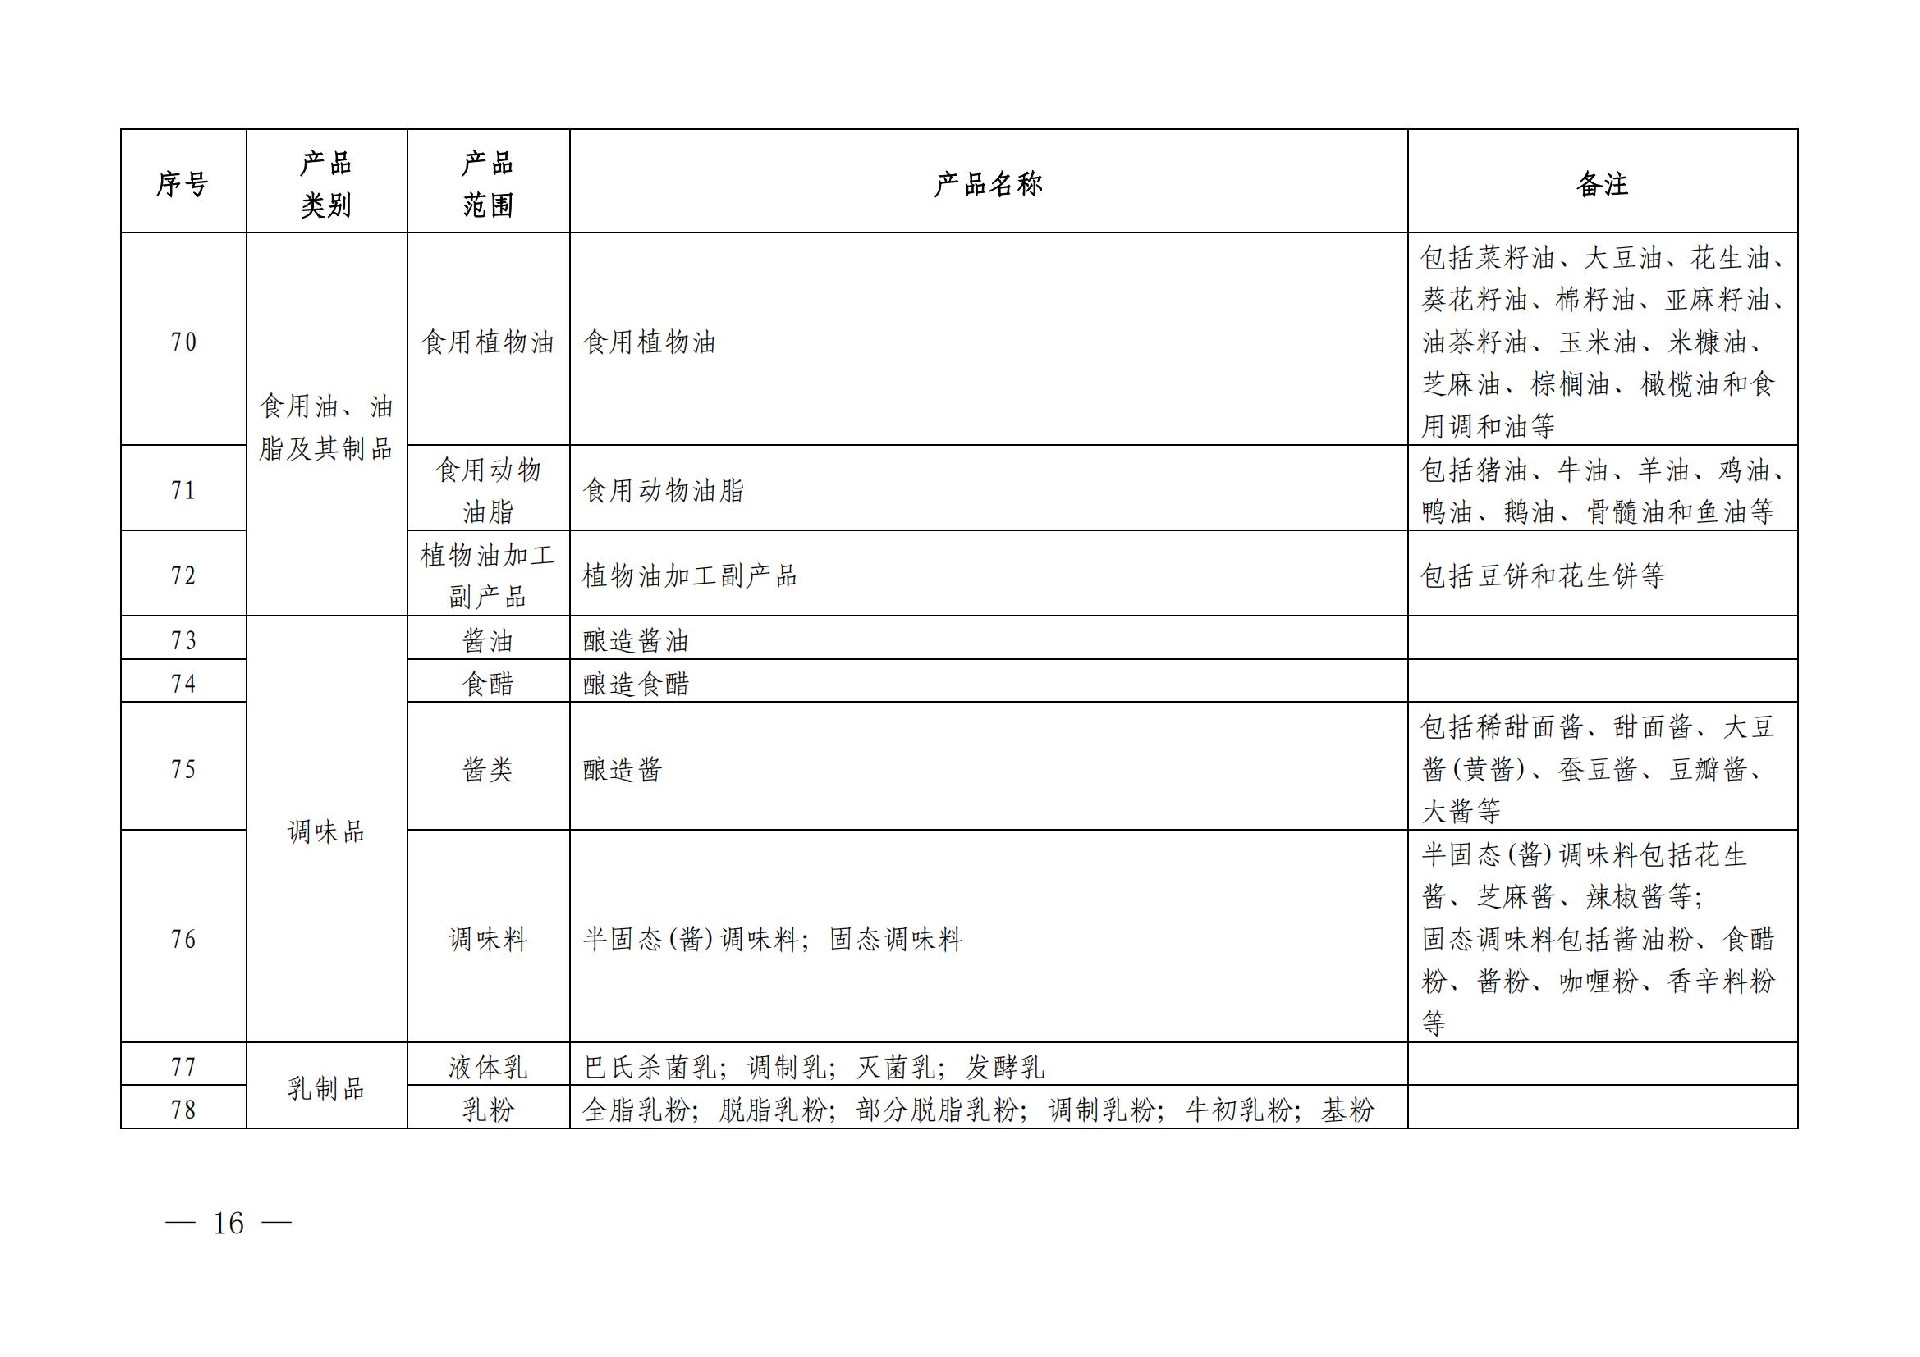 有机产品认证目录【认监委2019年第22号公告】(1)_15.jpg